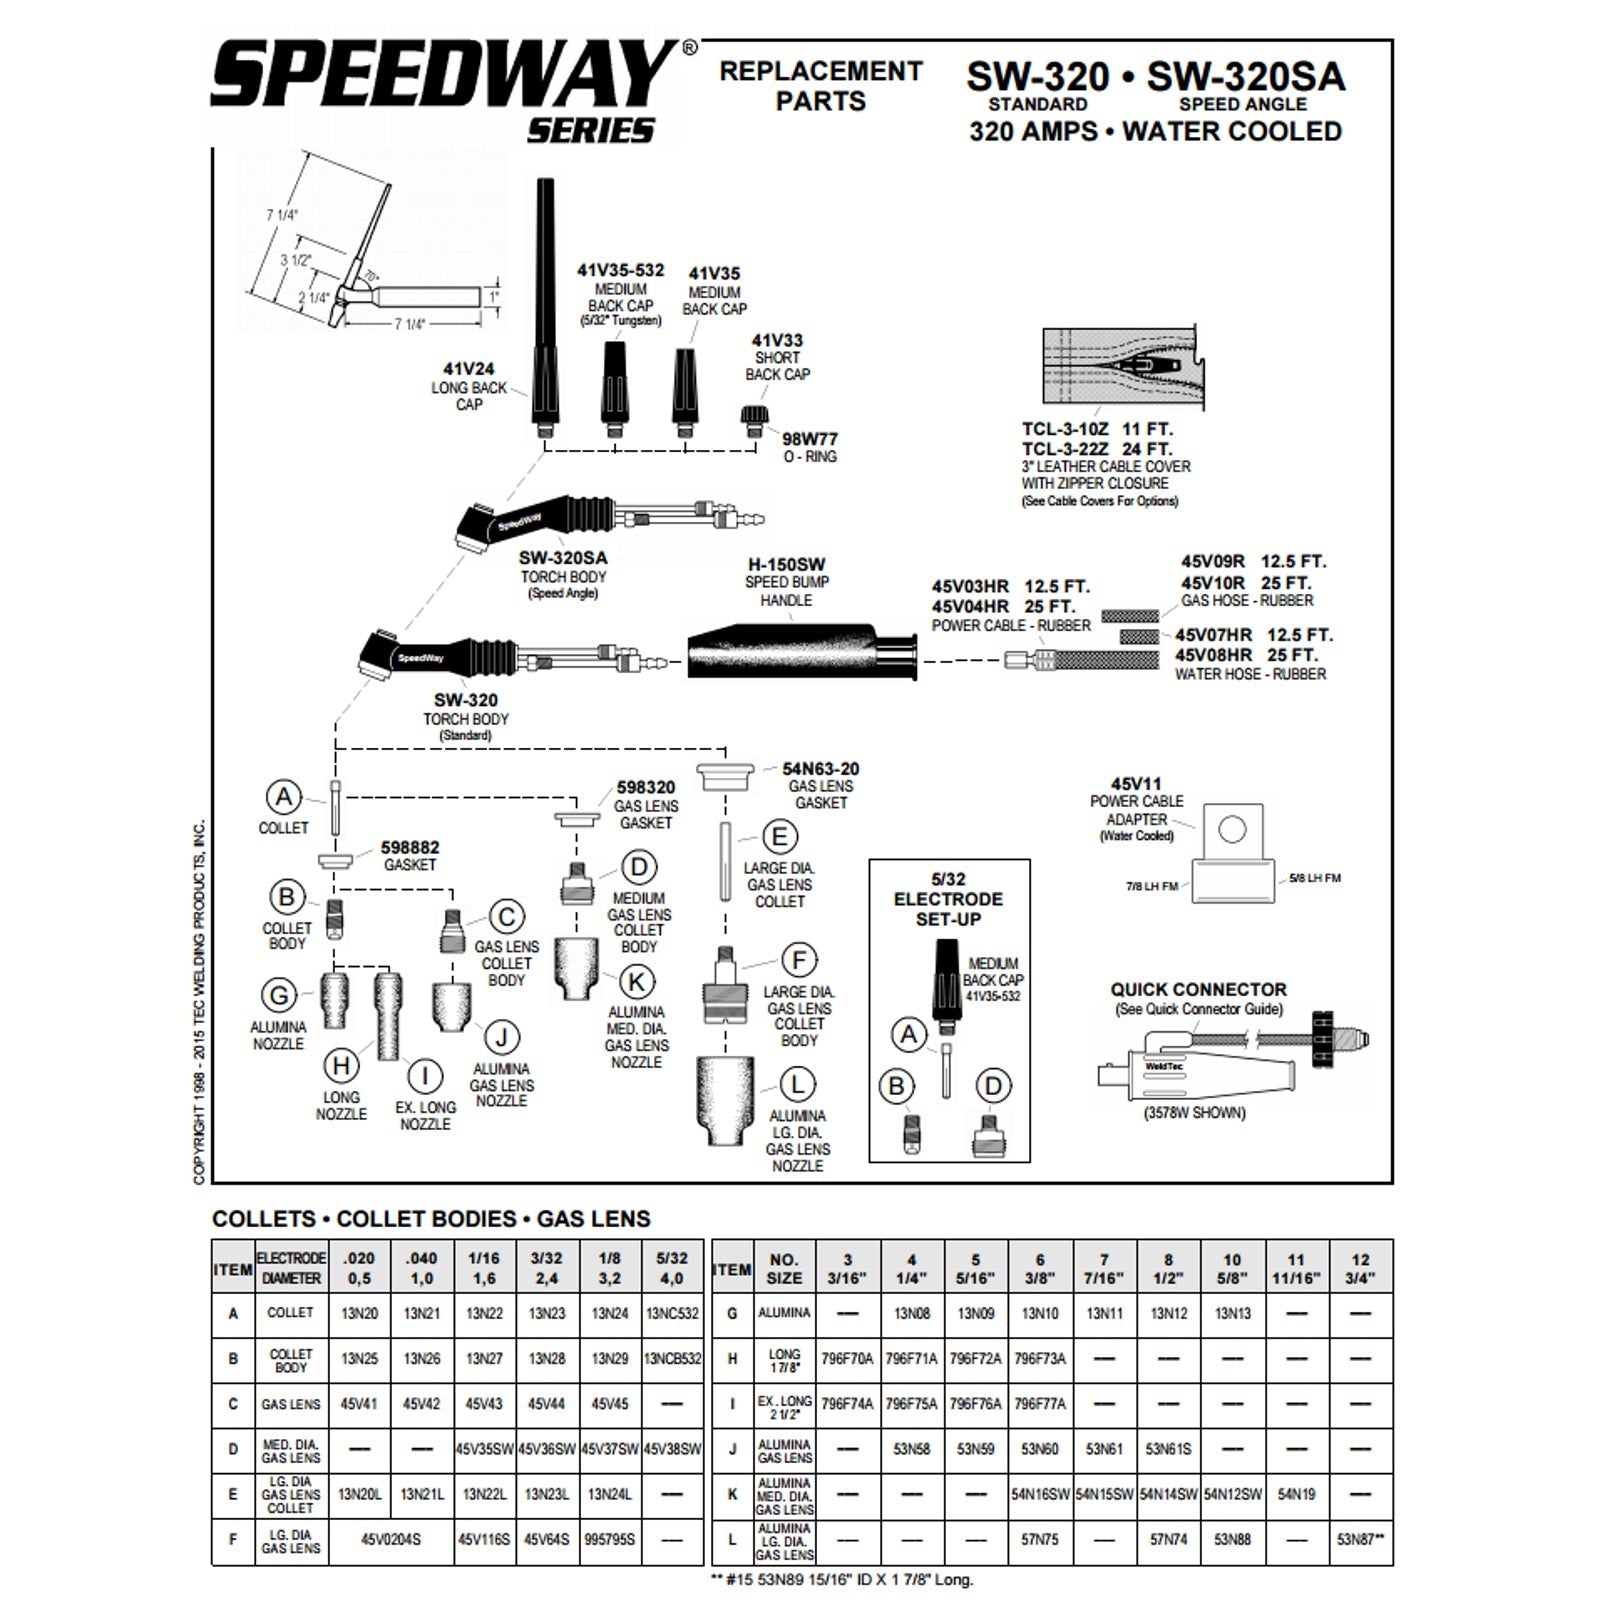 Weldtec 12ft Speedway Deluxe TIG Torch Package (SW-320-12DX)